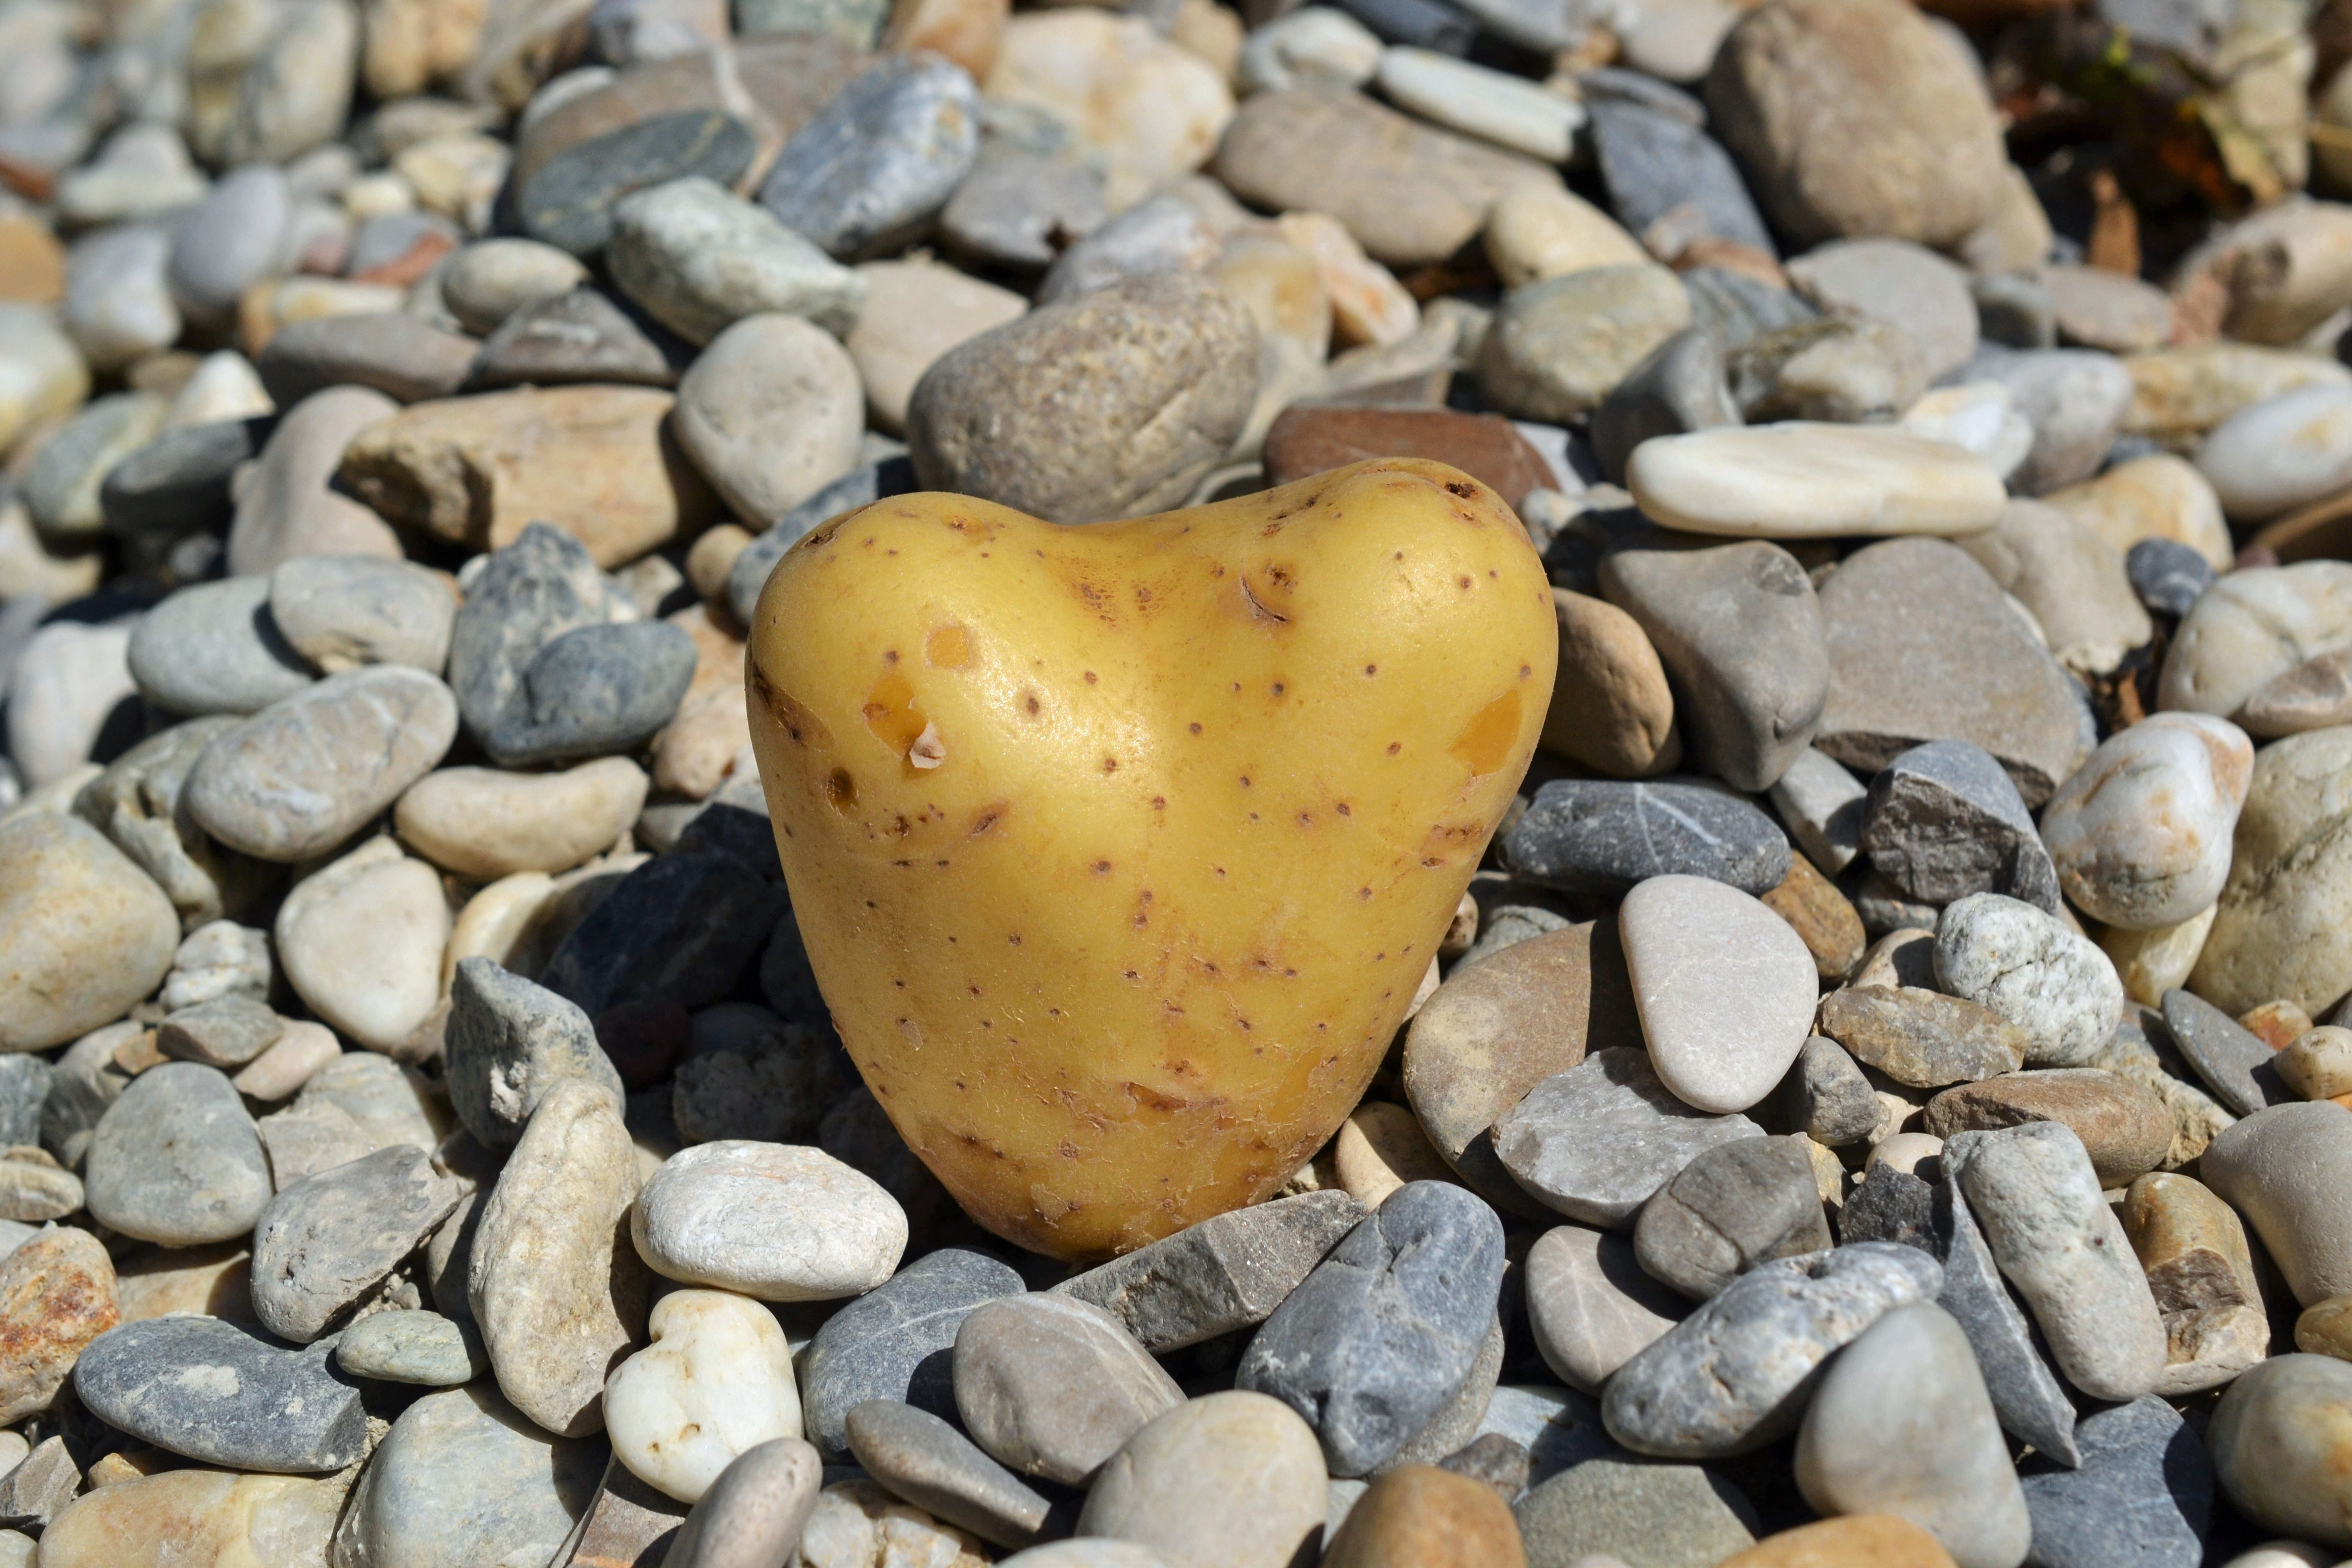 Potato, I Like You, Heart, Love, pebble, stone - object